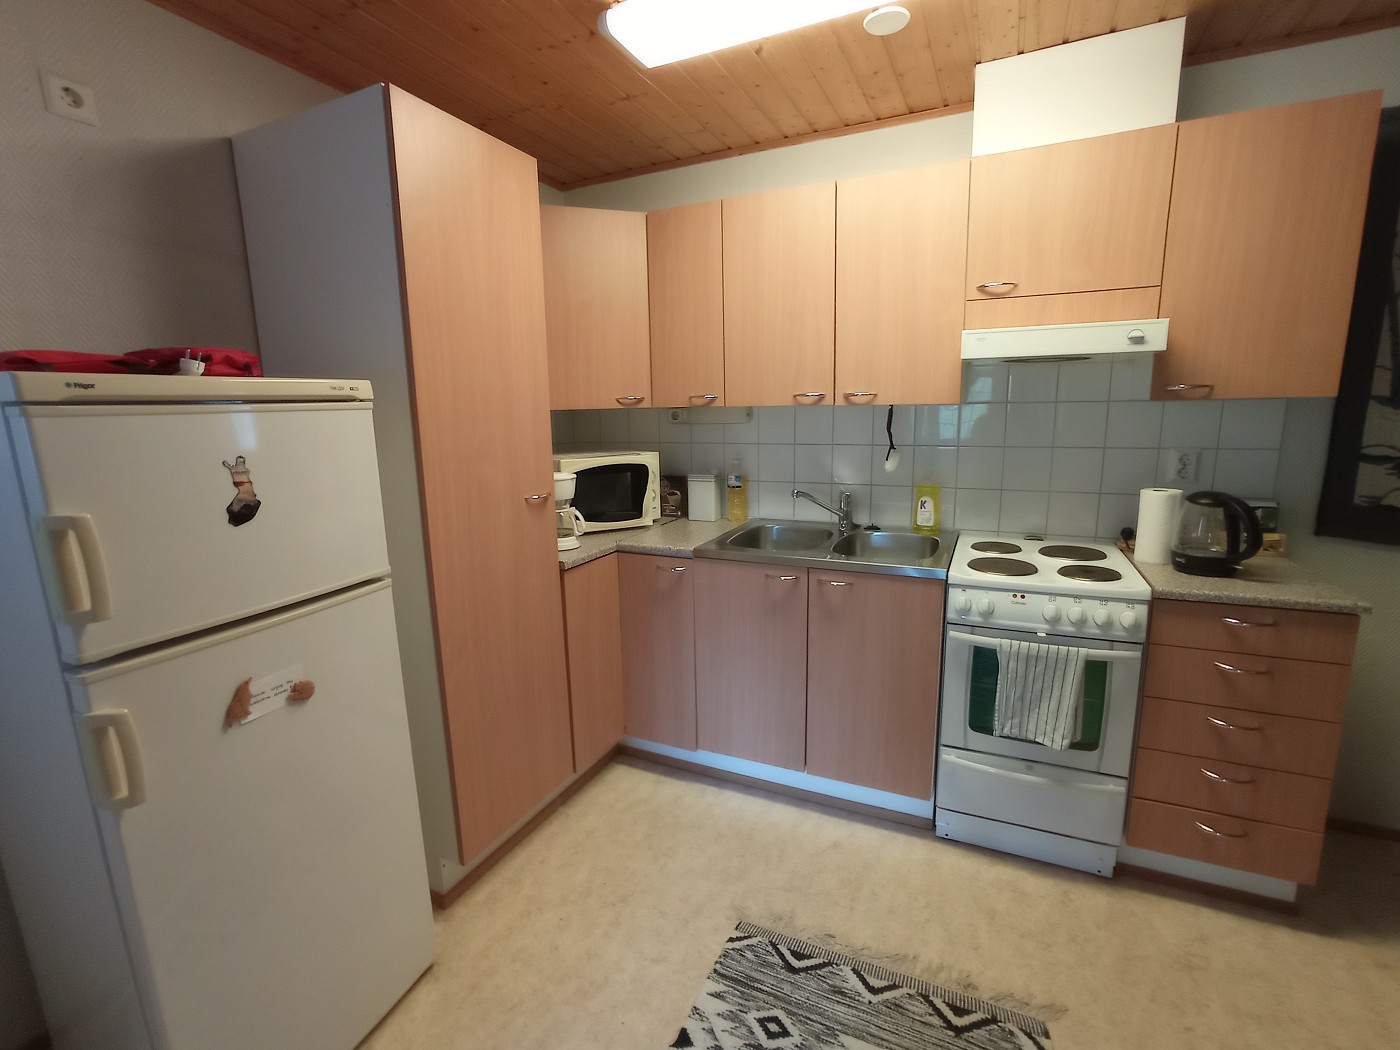 Kitchen overview Muonio Airbnb northern Finland